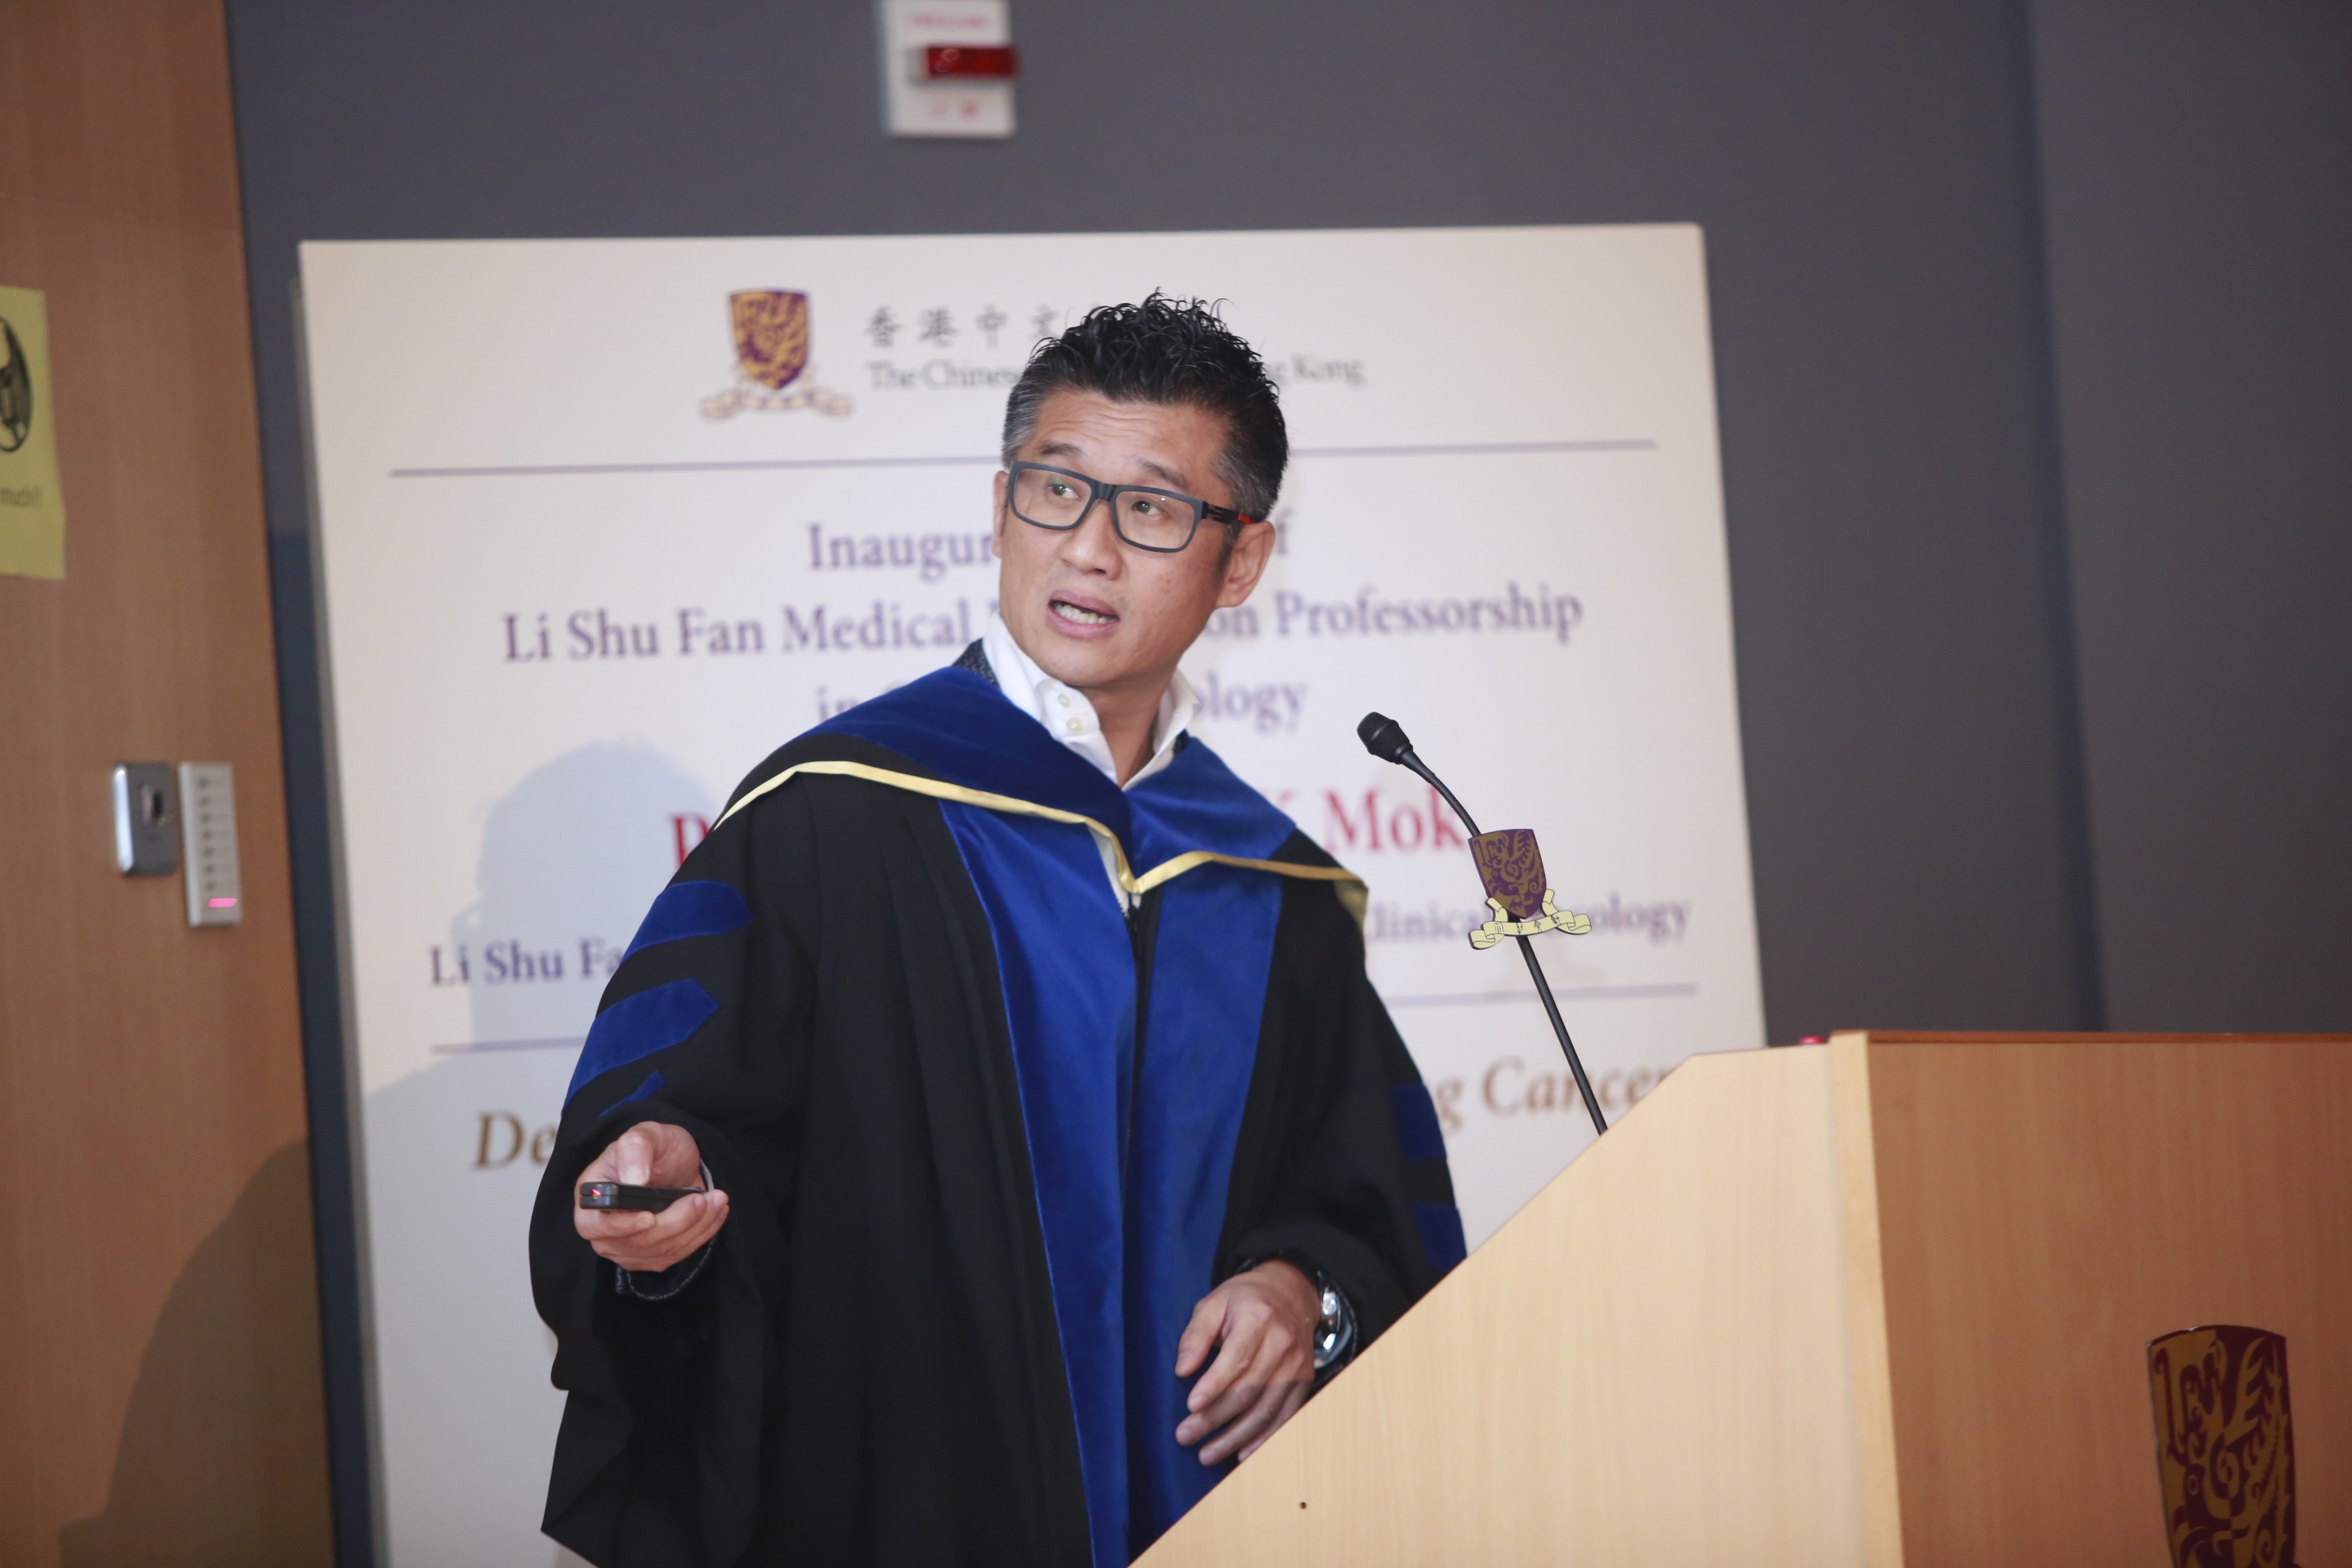 莫樹錦教授發表李樹芬醫學基金腫瘤學教授就職演講。